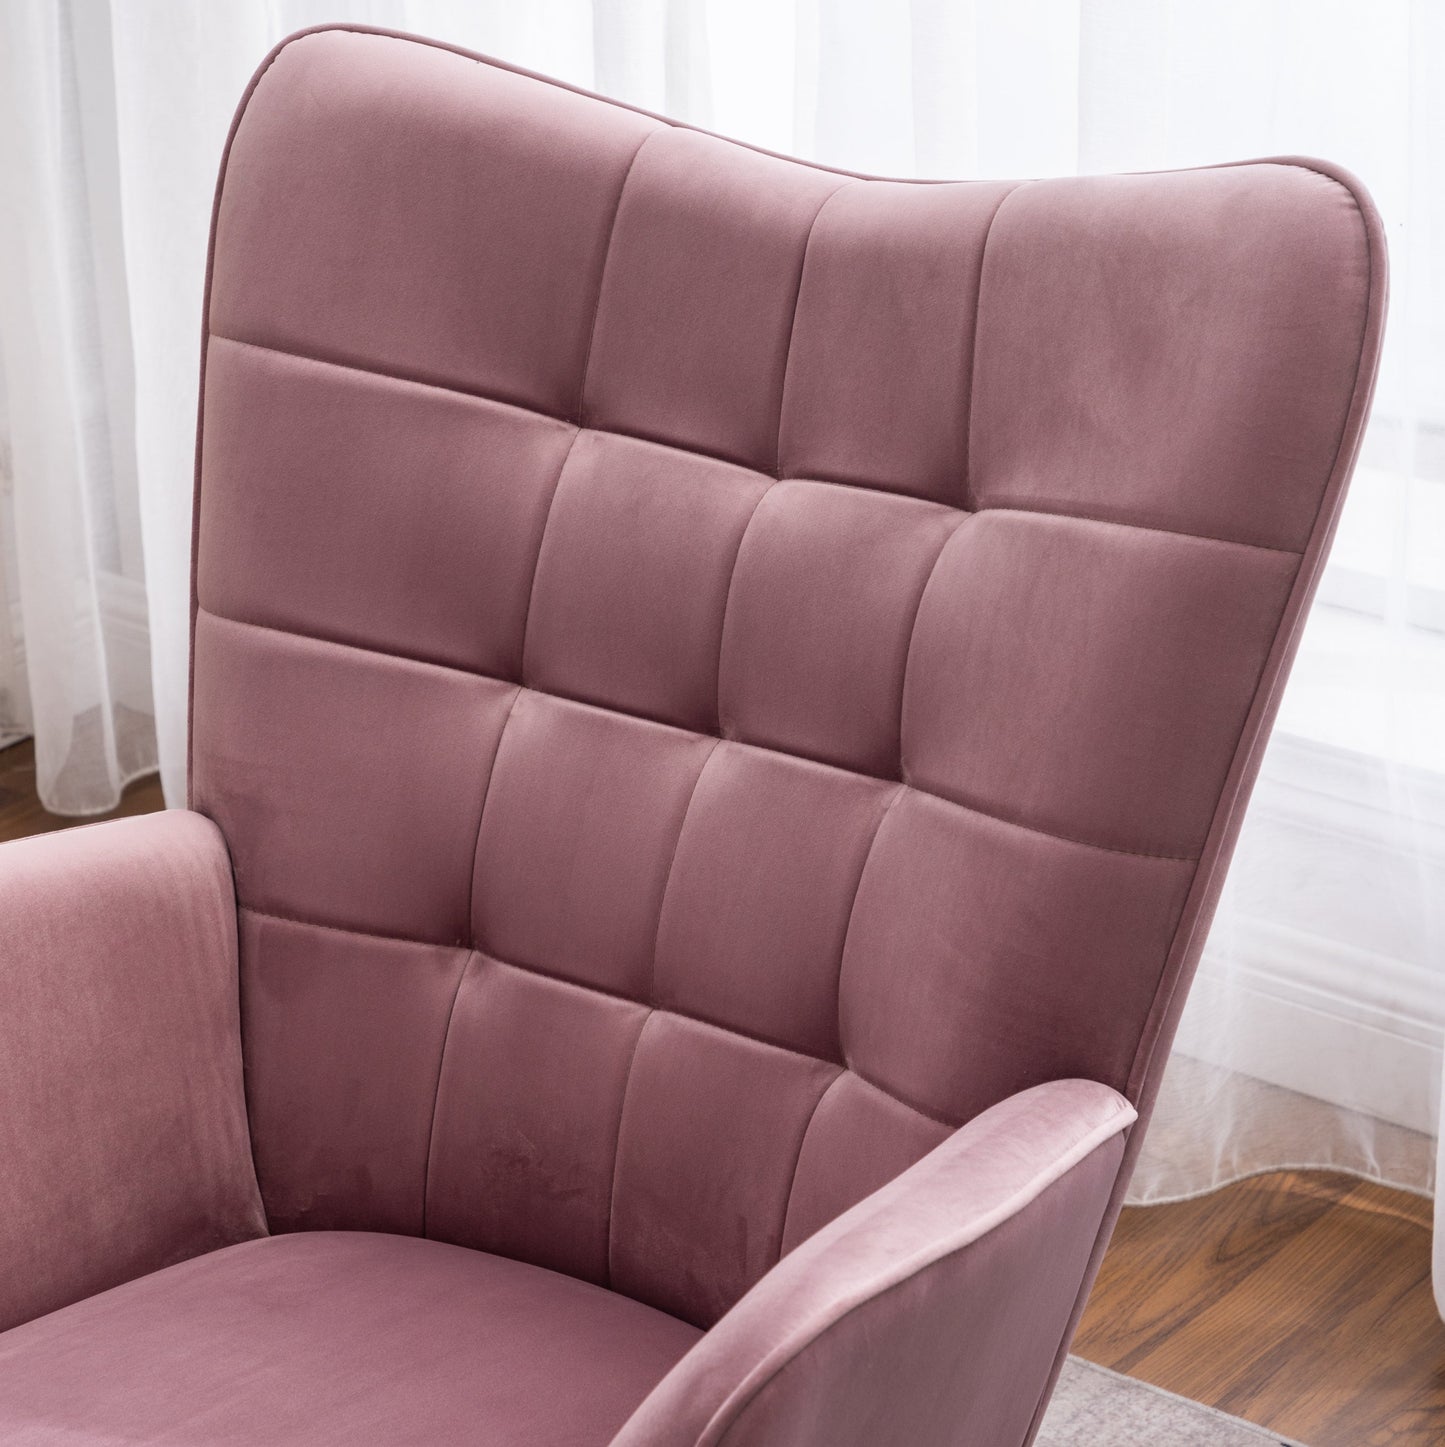 Leiria Contemporary Silky Velvet Tufted Accent Chair with Ottoman, Mauve